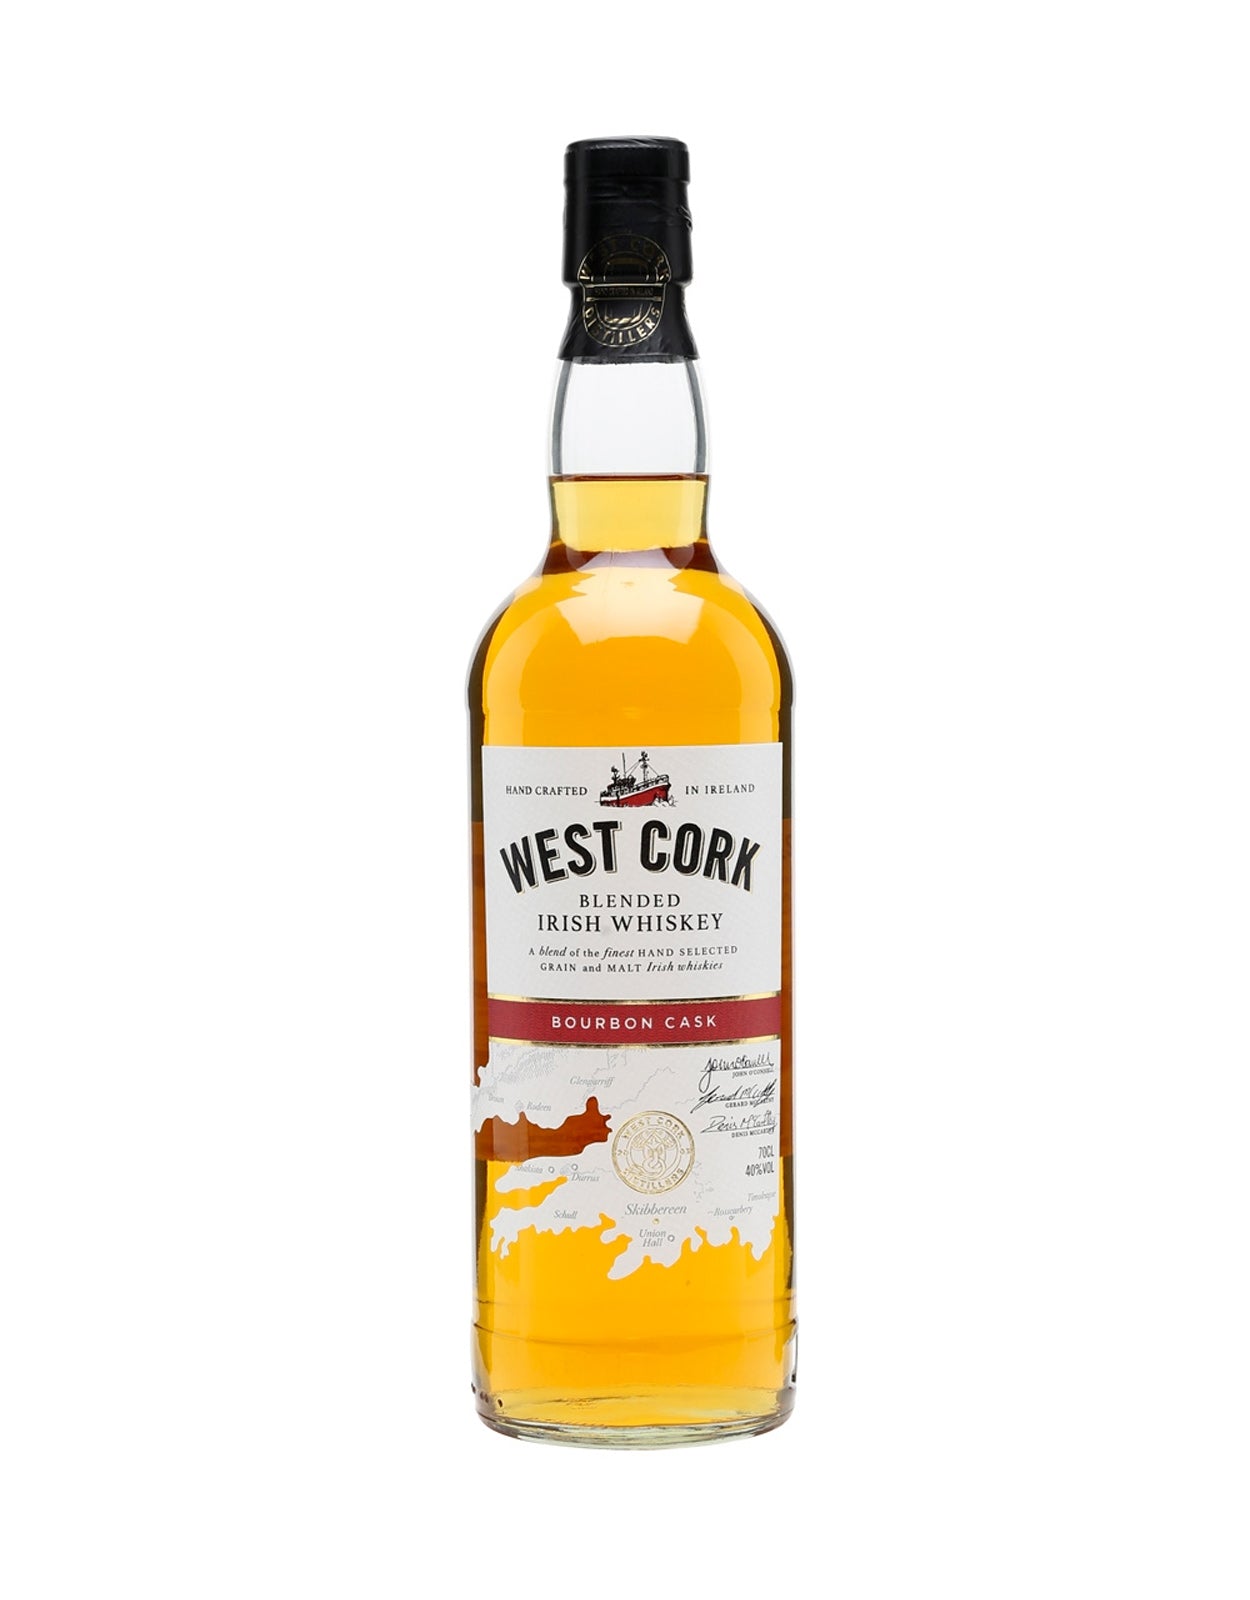 West Cork Blended Irish Whisky "Bourbon Cask"